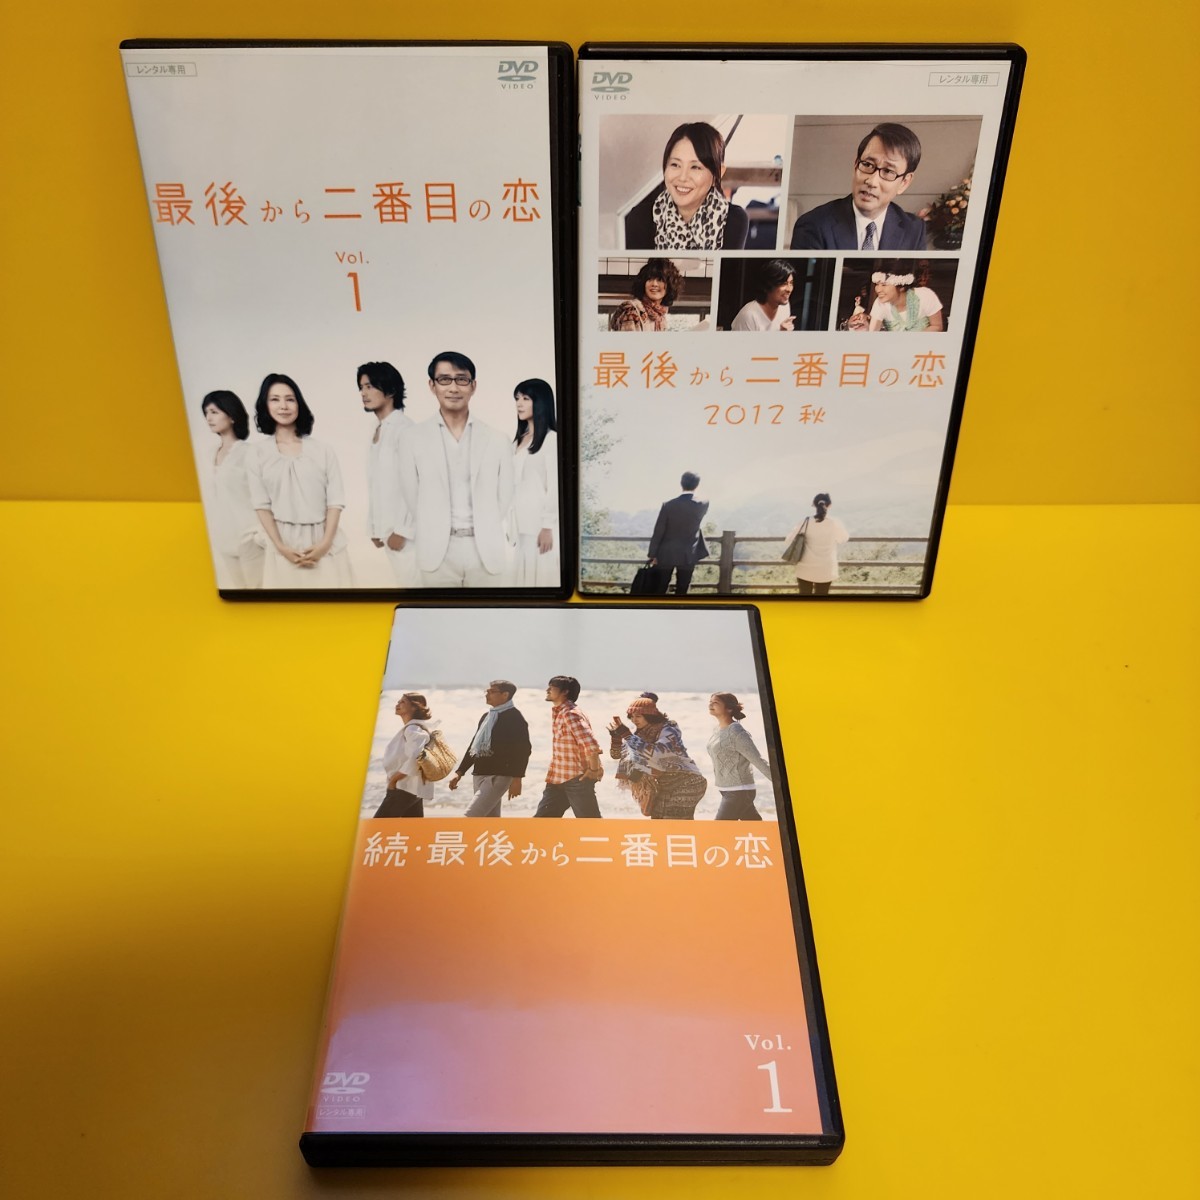 最後から二番目の恋 +2012秋+ 続・最後から二番目の恋 DVD13巻セット